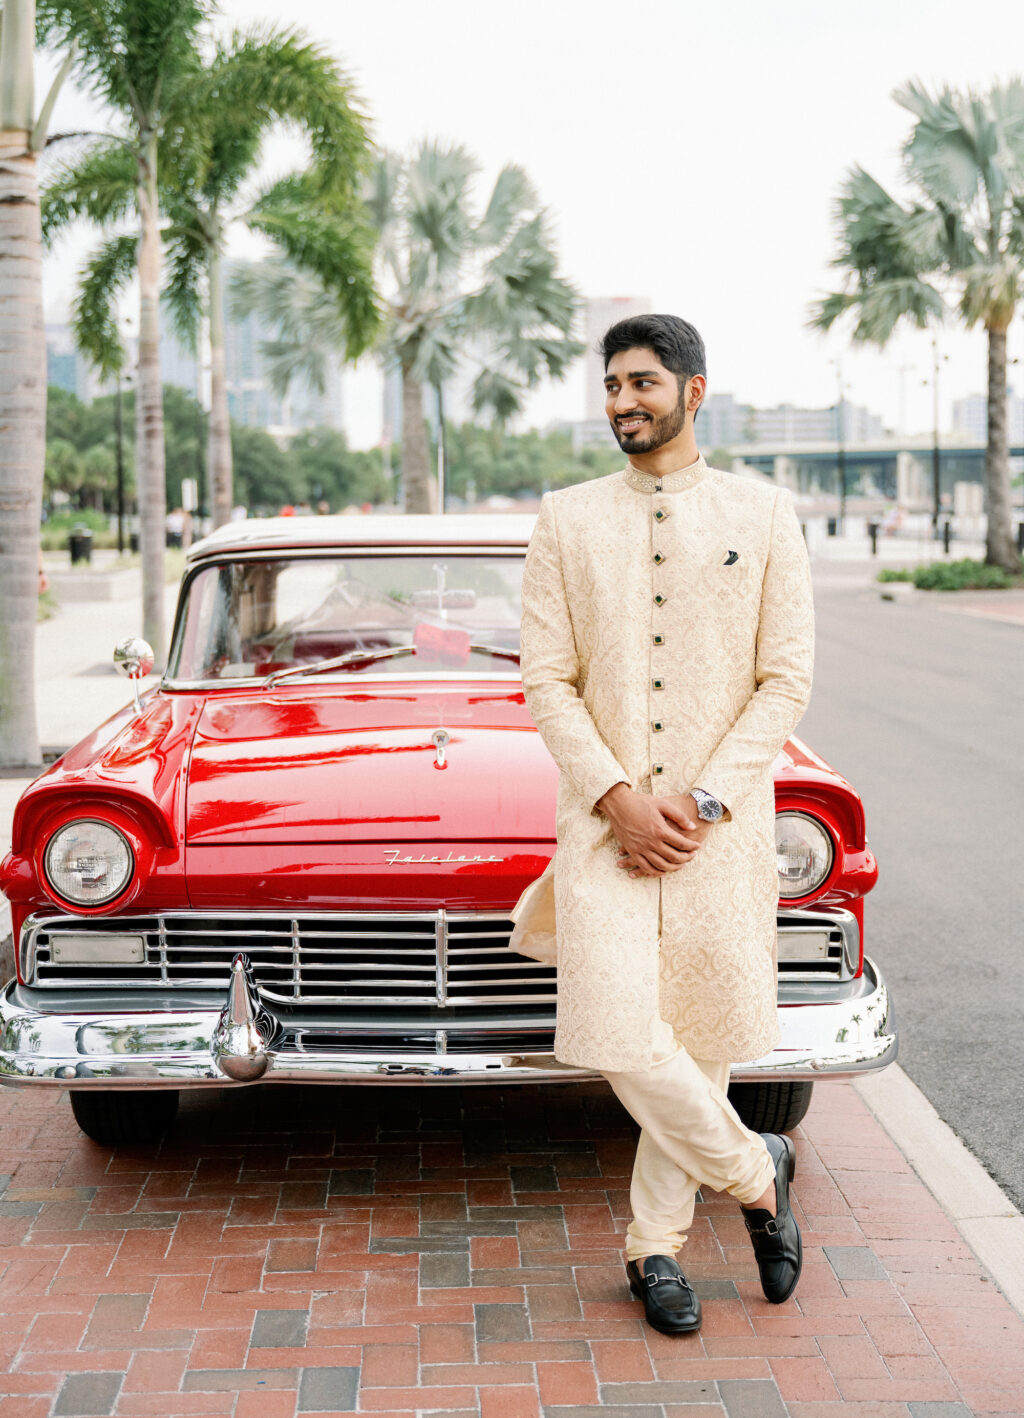 Classical Car Wedding Transportation Ideas | Beige Groom's Sherwani